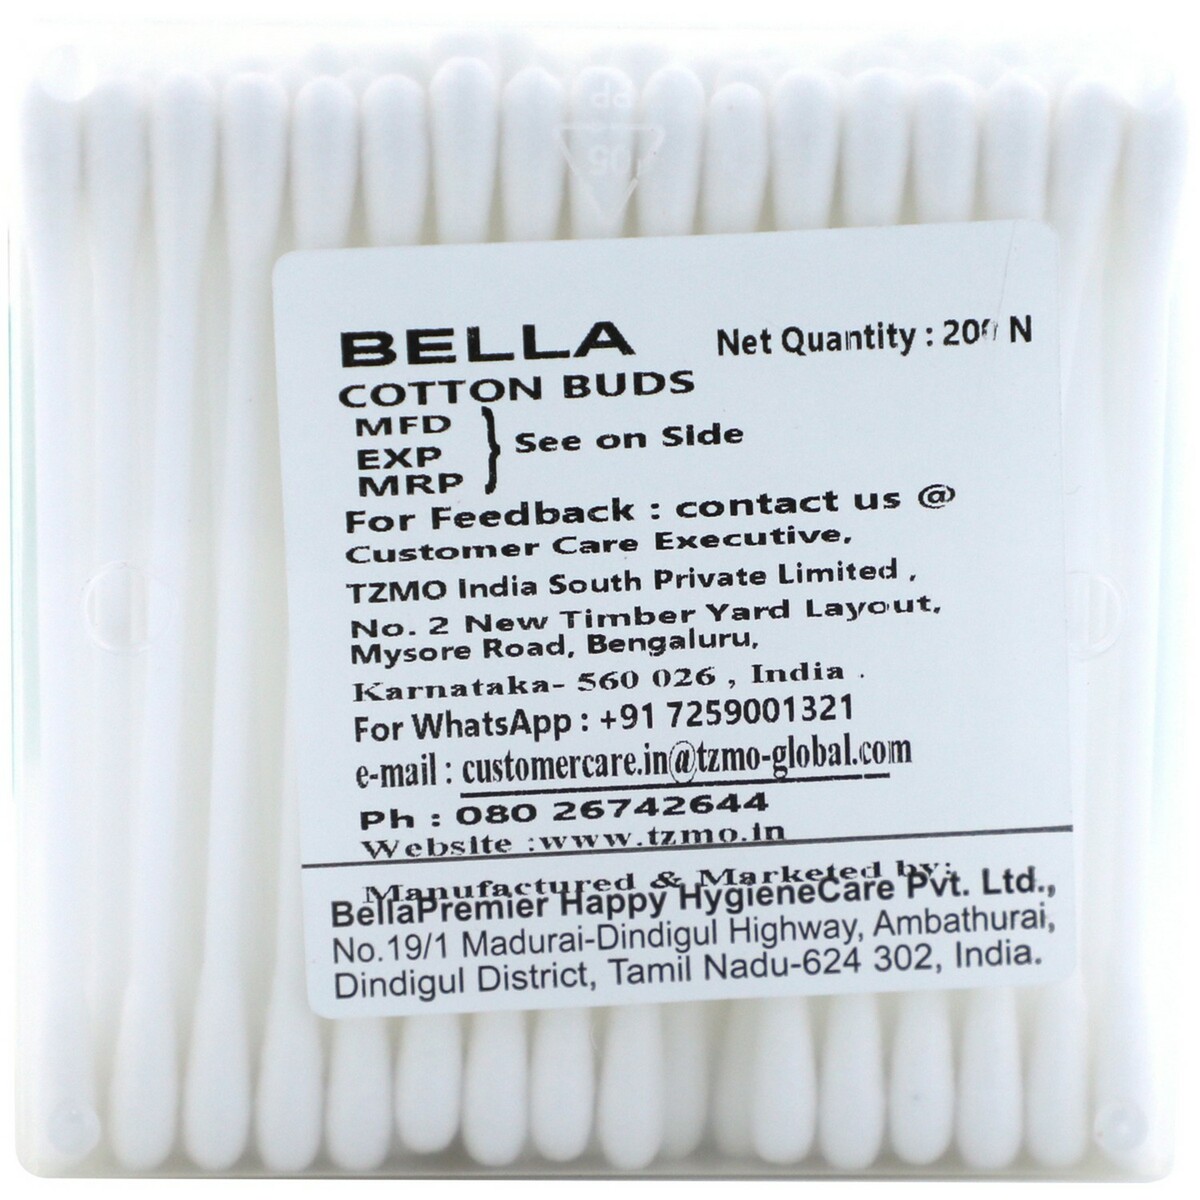 Bella Cotton Buds Aloe Vera 200's